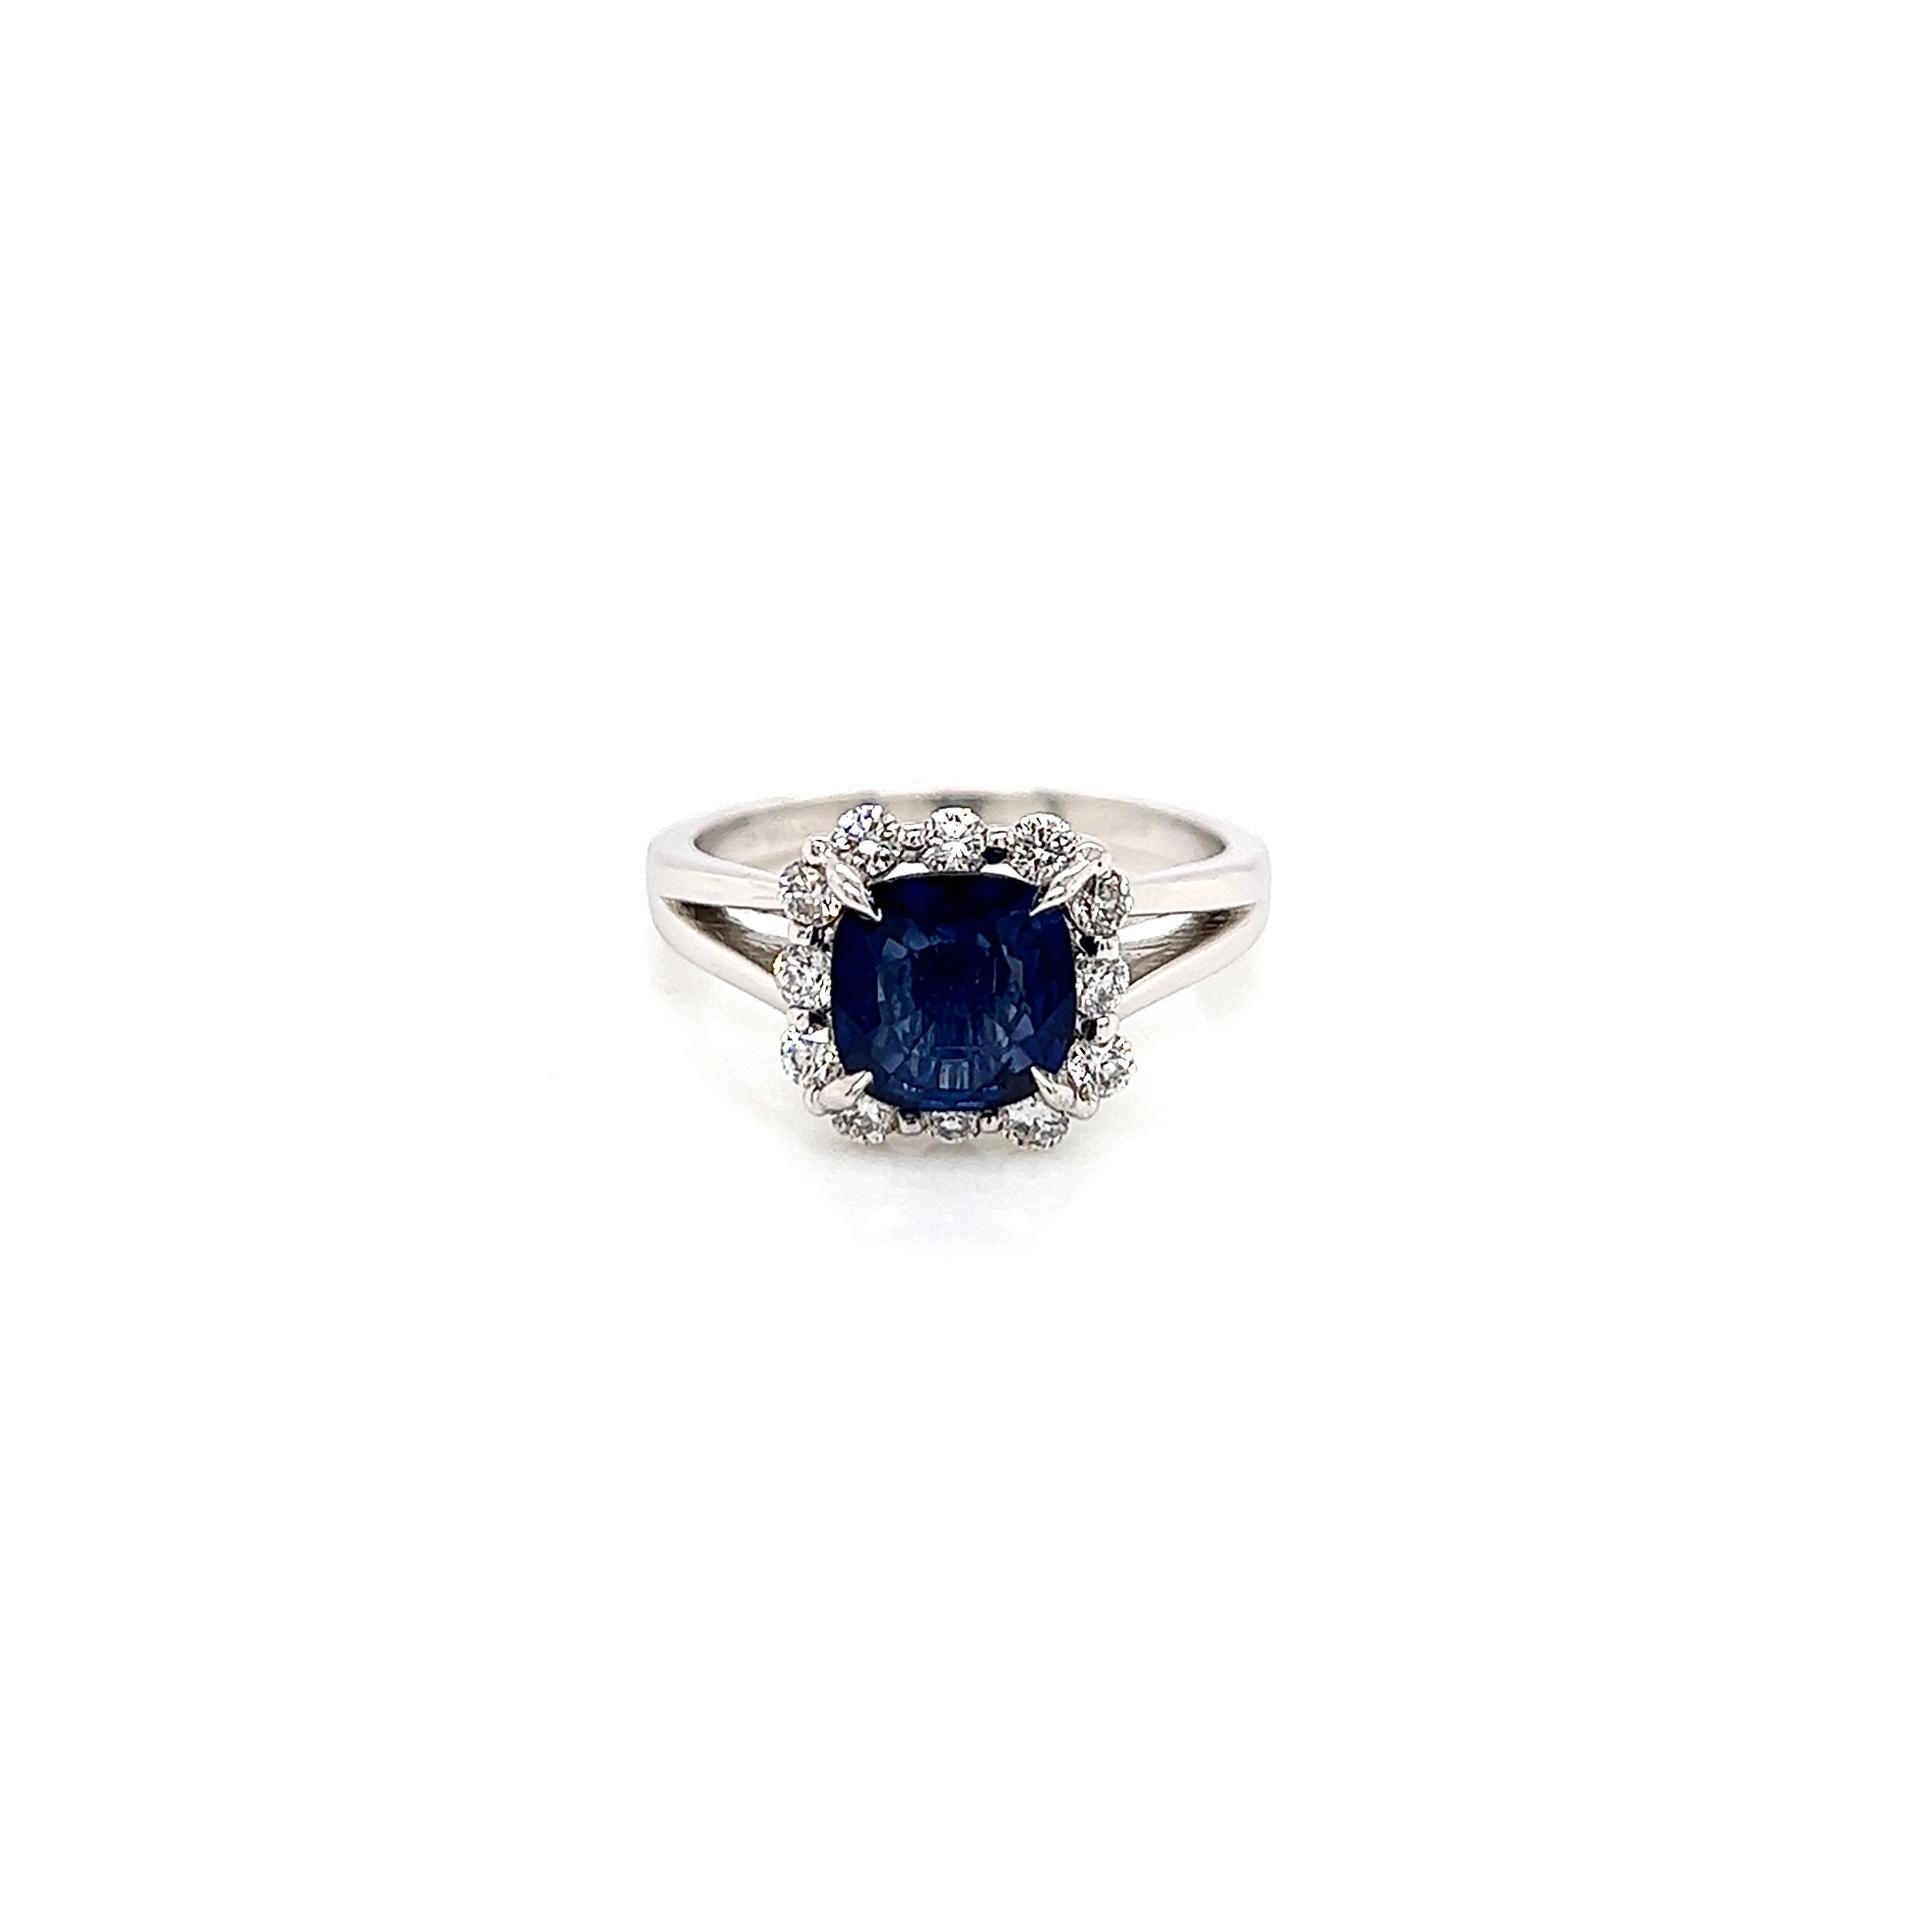 2.bague de fiançailles à diamant saphir de 02 carats totaux

-Type de métal : or blanc 18K
-saphir bleu taille coussin de 1,55 carat
-diamants latéraux ronds de 0,47 carat 
-Taille 6.75

Fabriqué à New York.